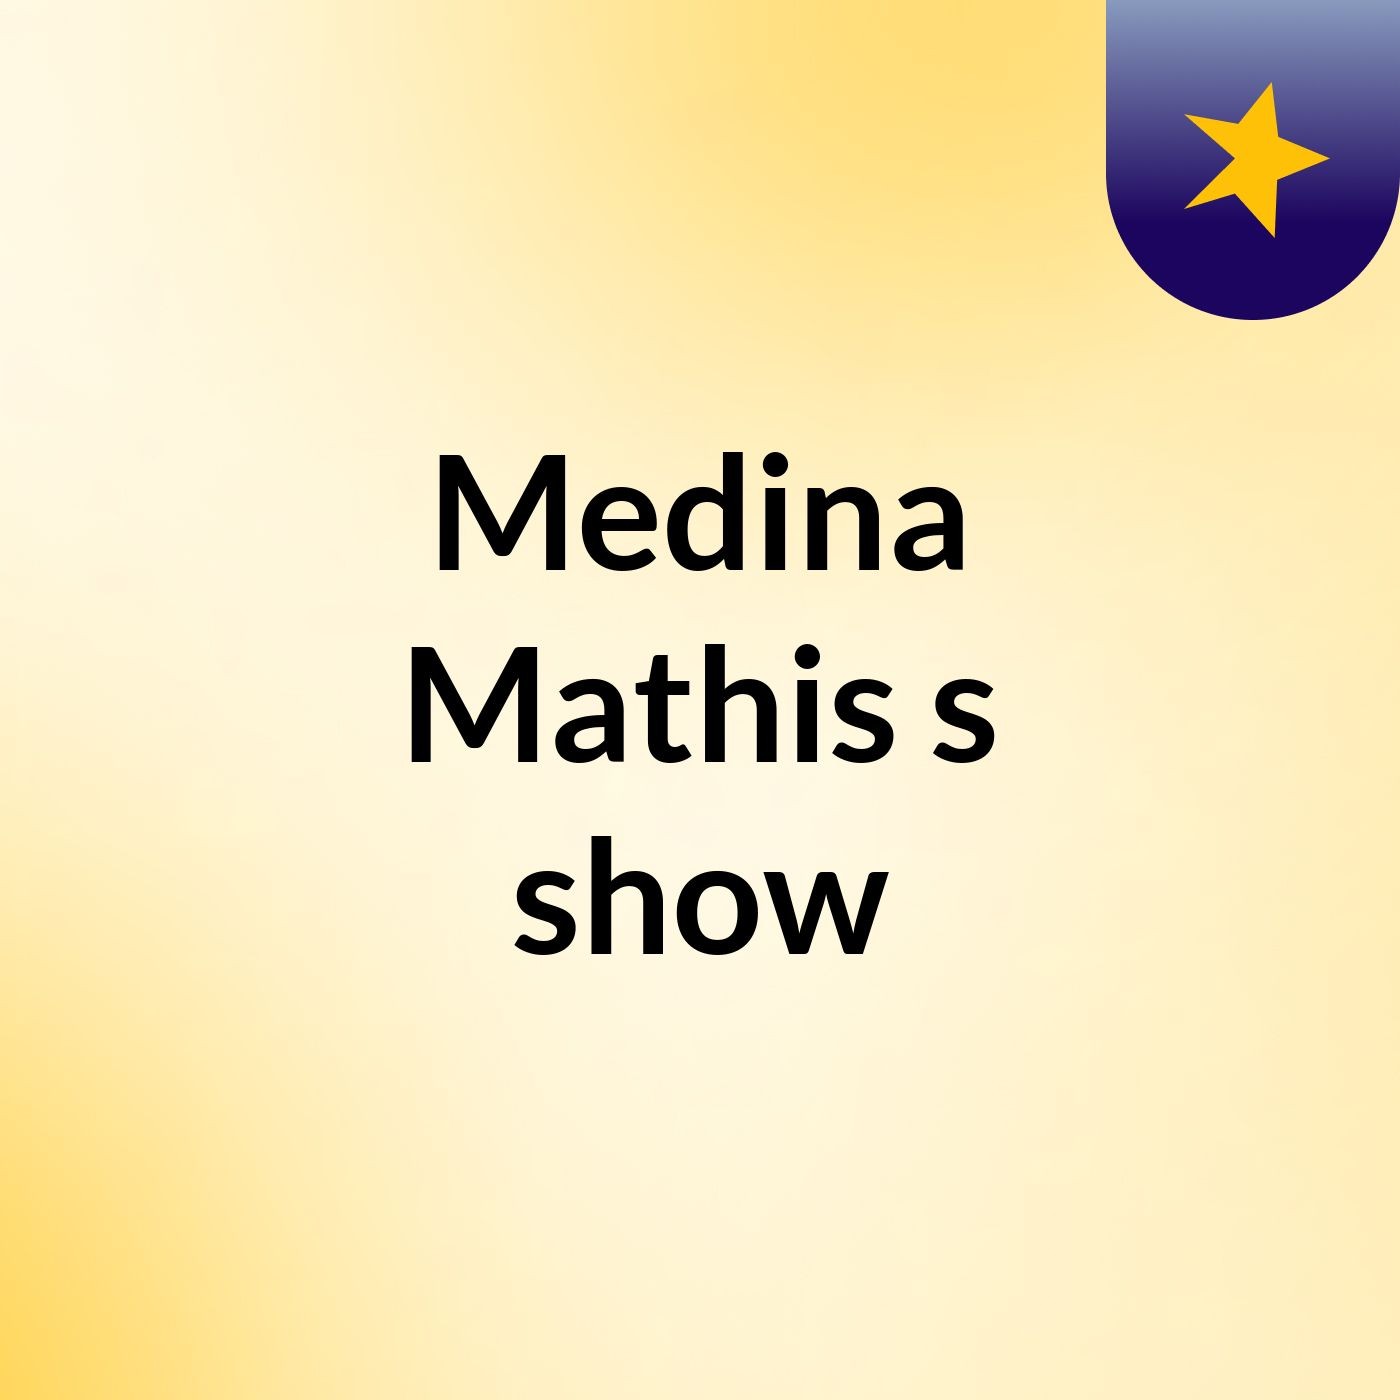 Medina Mathis's show